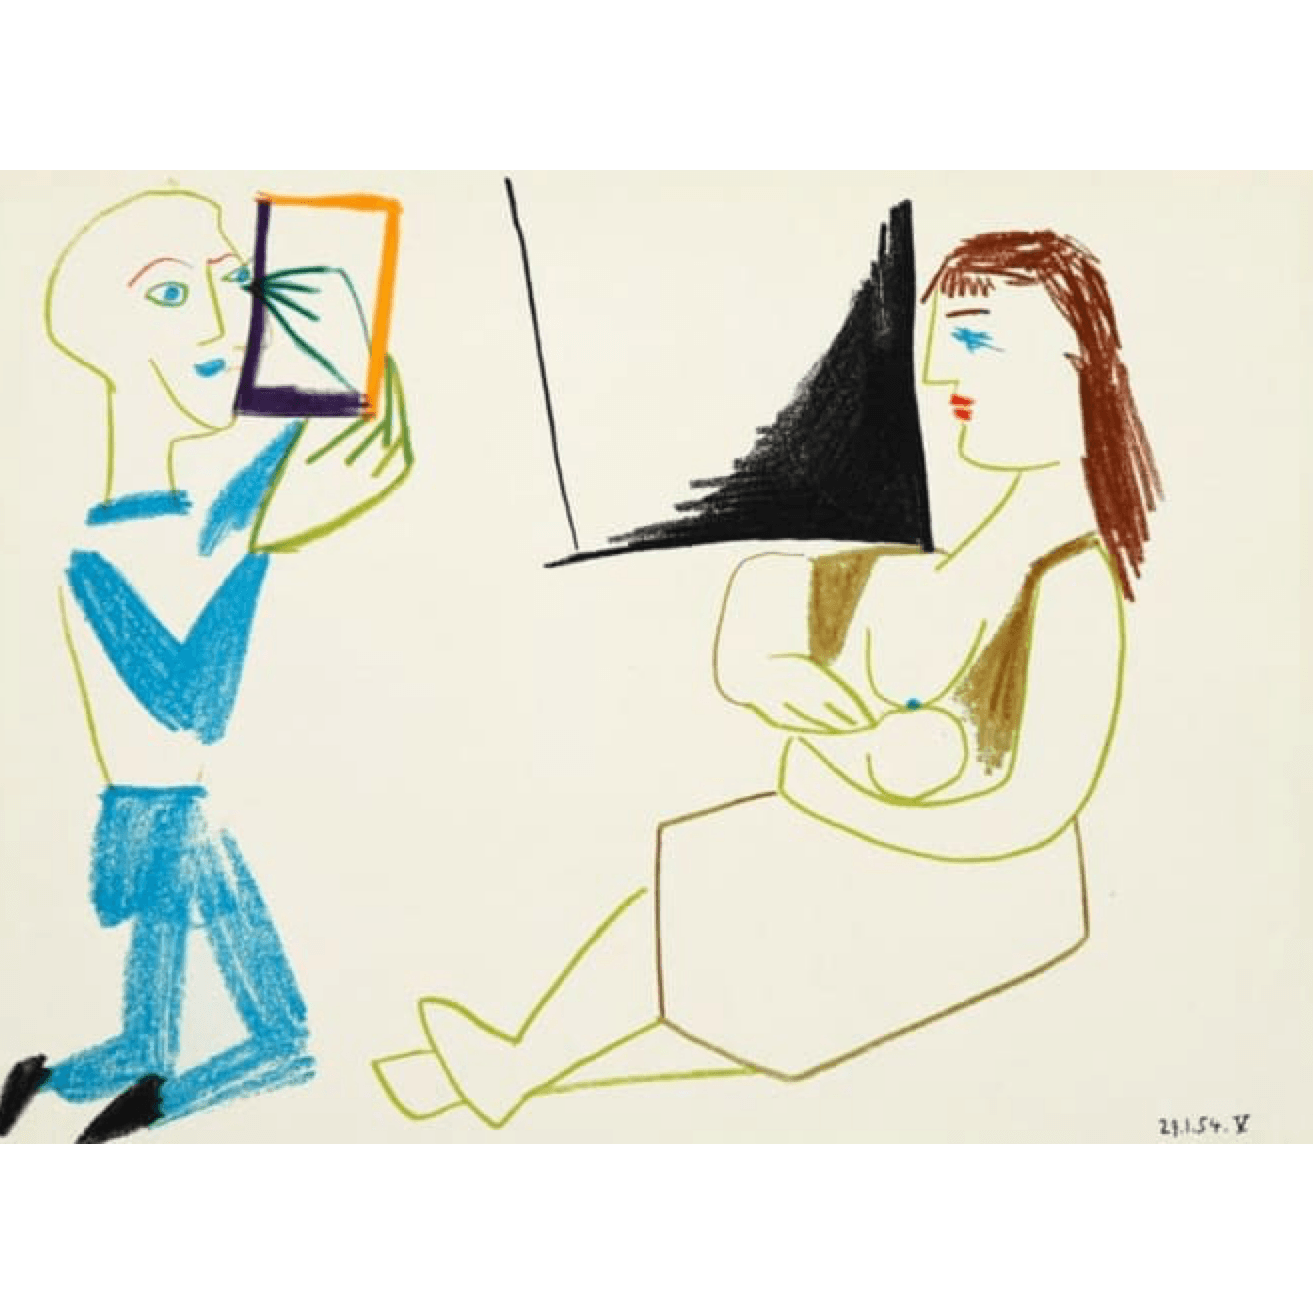 Pablo Picasso - 29.1.54 V - Barnbury